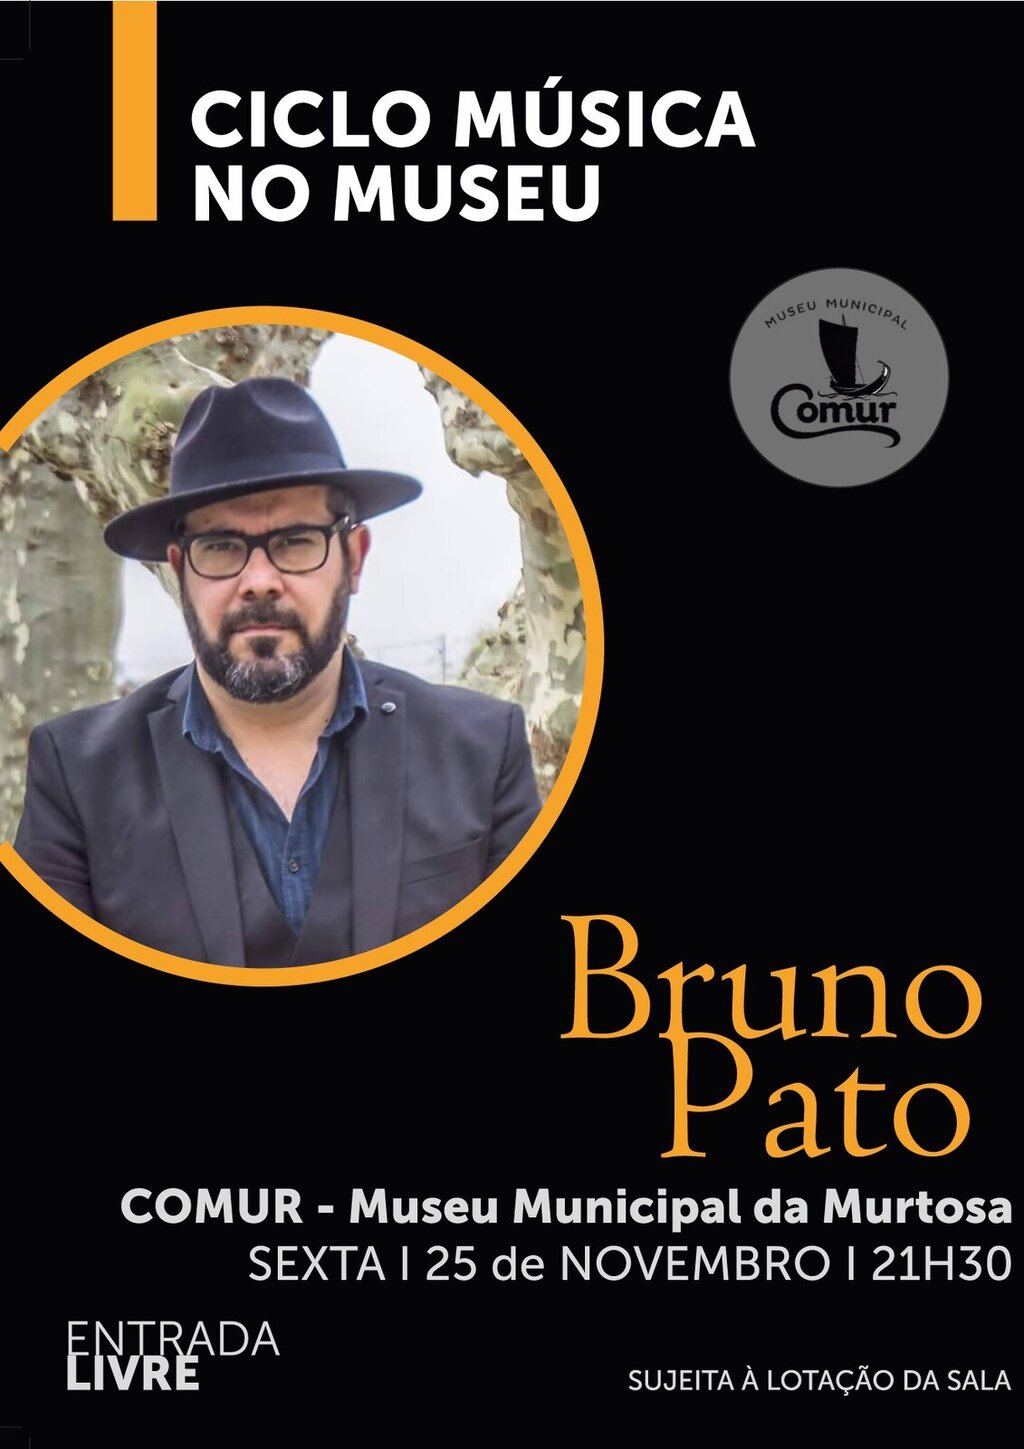  Bruno Pato - Música no Museu